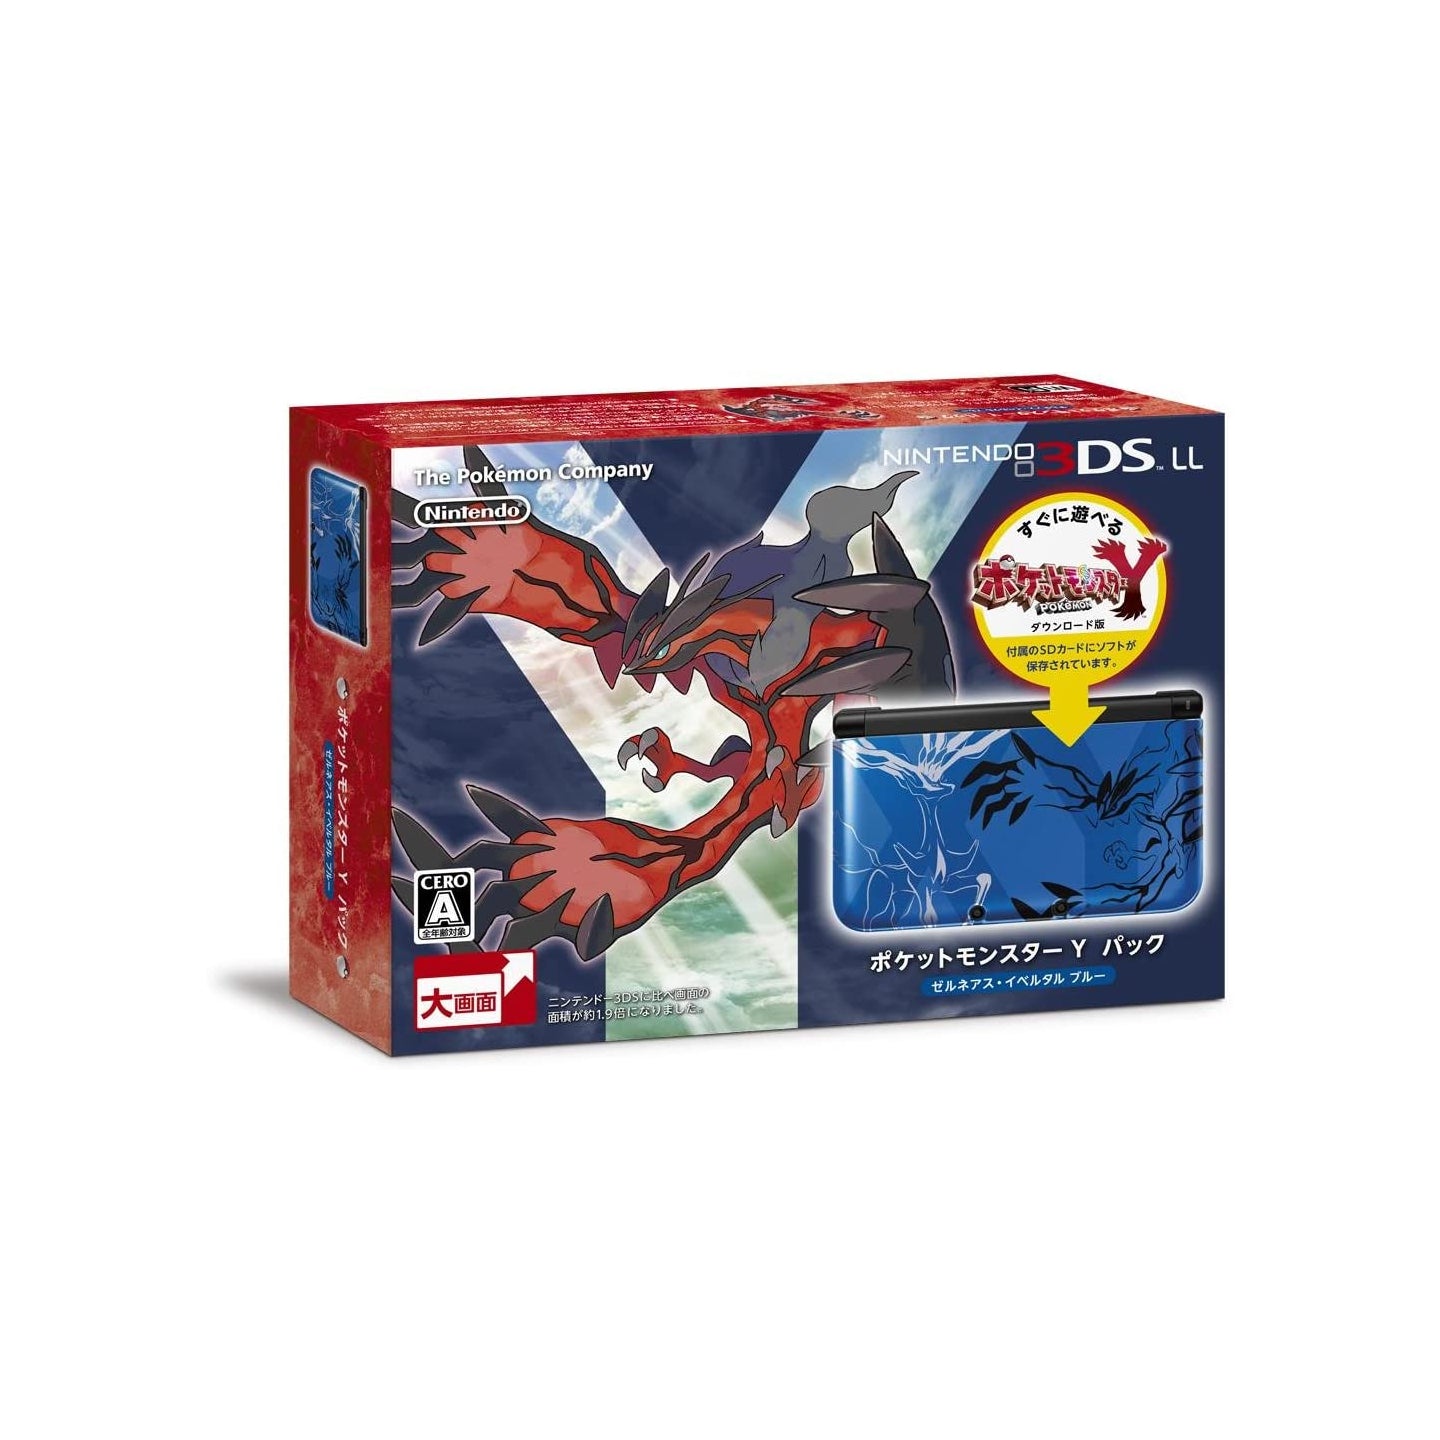 Nintendo Nintendo 3Ds Ll Pocket Monster Pokemon Y Blue Pack New